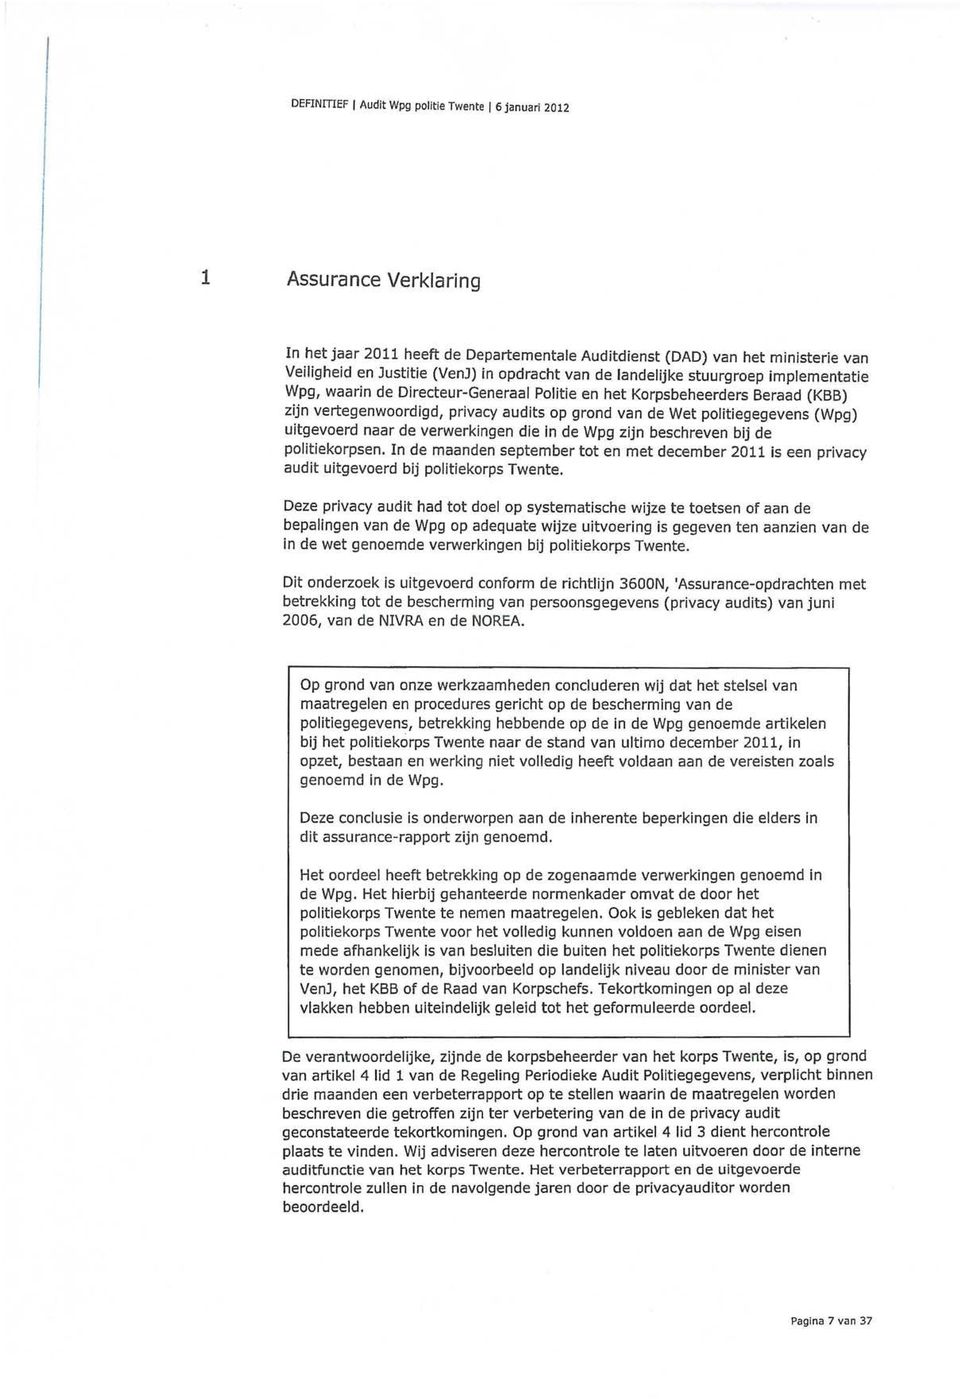 (Wpg) uitgevoerd naar de verwerkingen die in de Wpg zijn beschreven bij de politiekorpsen. In de maanden september tot en met december 2011 is een privacy audit uitgevoerd bij politiekorps Twente.